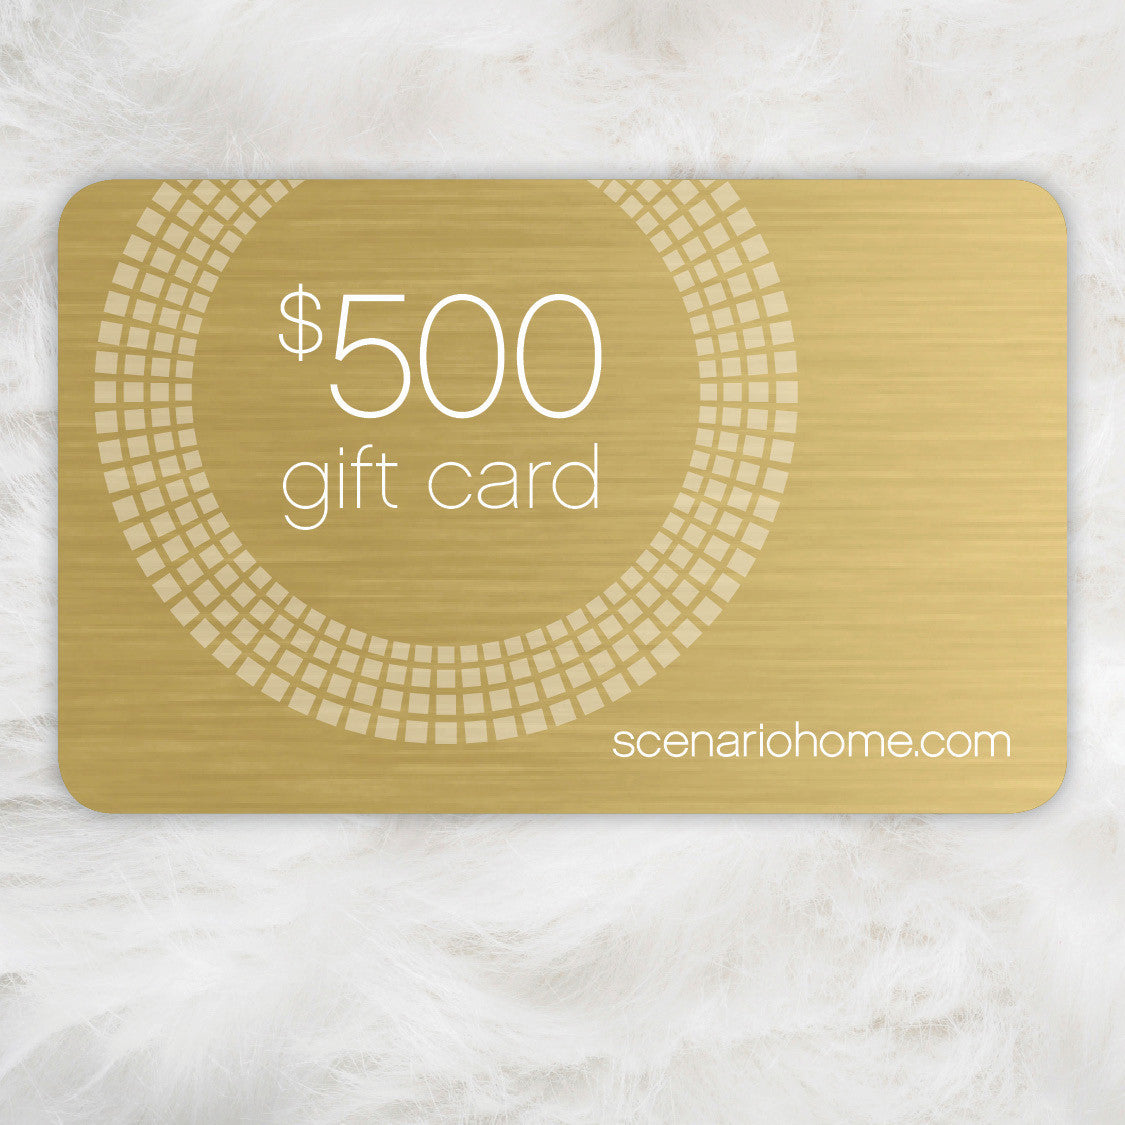 Gift Card - $500 Scenario Home E-Gift Card